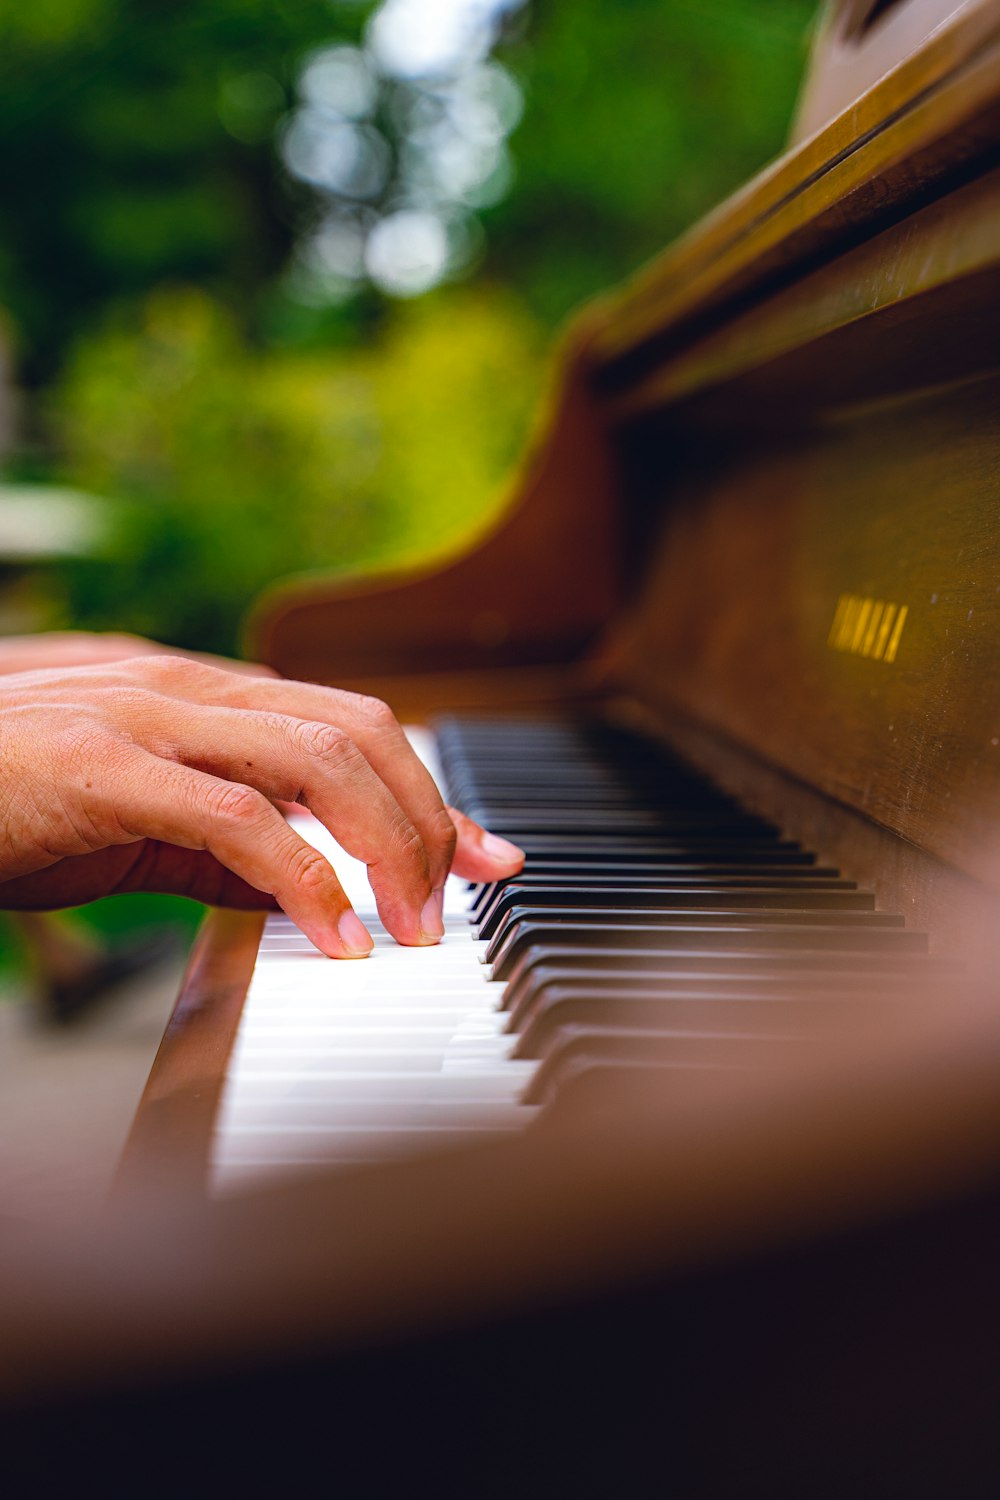 um close up de uma pessoa tocando um piano